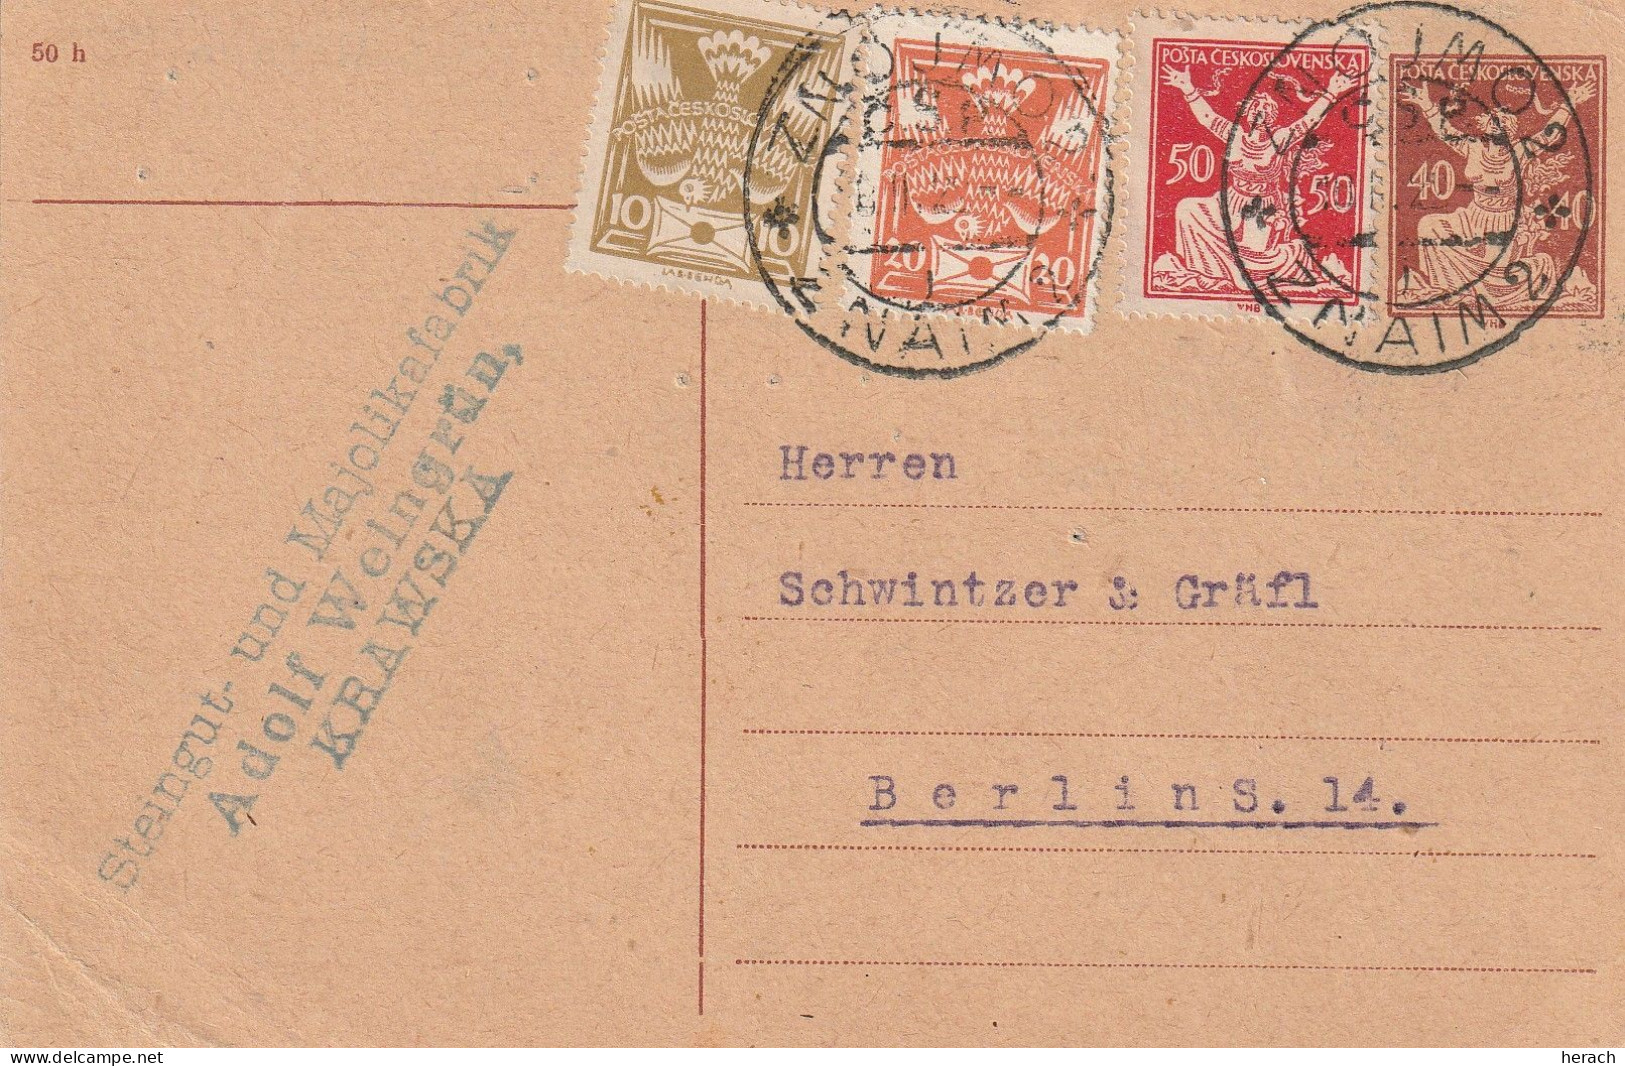 Tchécoslovaquie Entier Postal Pour L'Allemagne 1922 - Cartes Postales